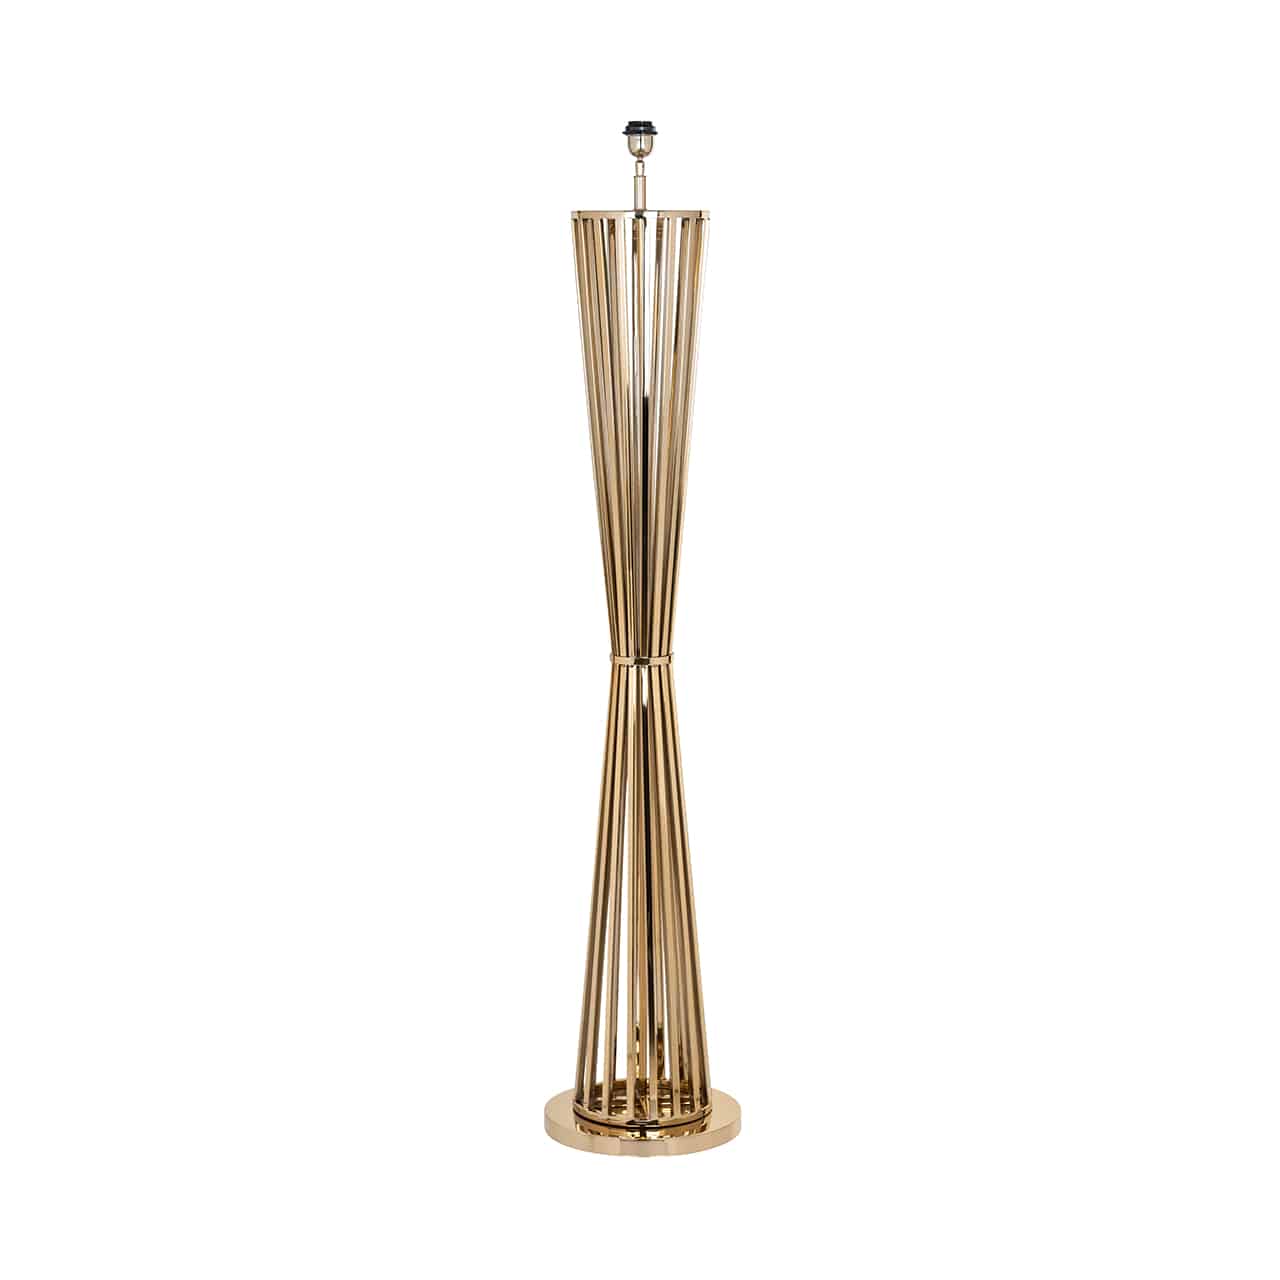 Stehlampe/Lampenfuß, bestehend aus einem runden Bodenteller, darauf mehrere, kreisrund angeordnete, goldene Edelstahlstreben, mittig eingeschnürt, wie ein Ährenbündel.